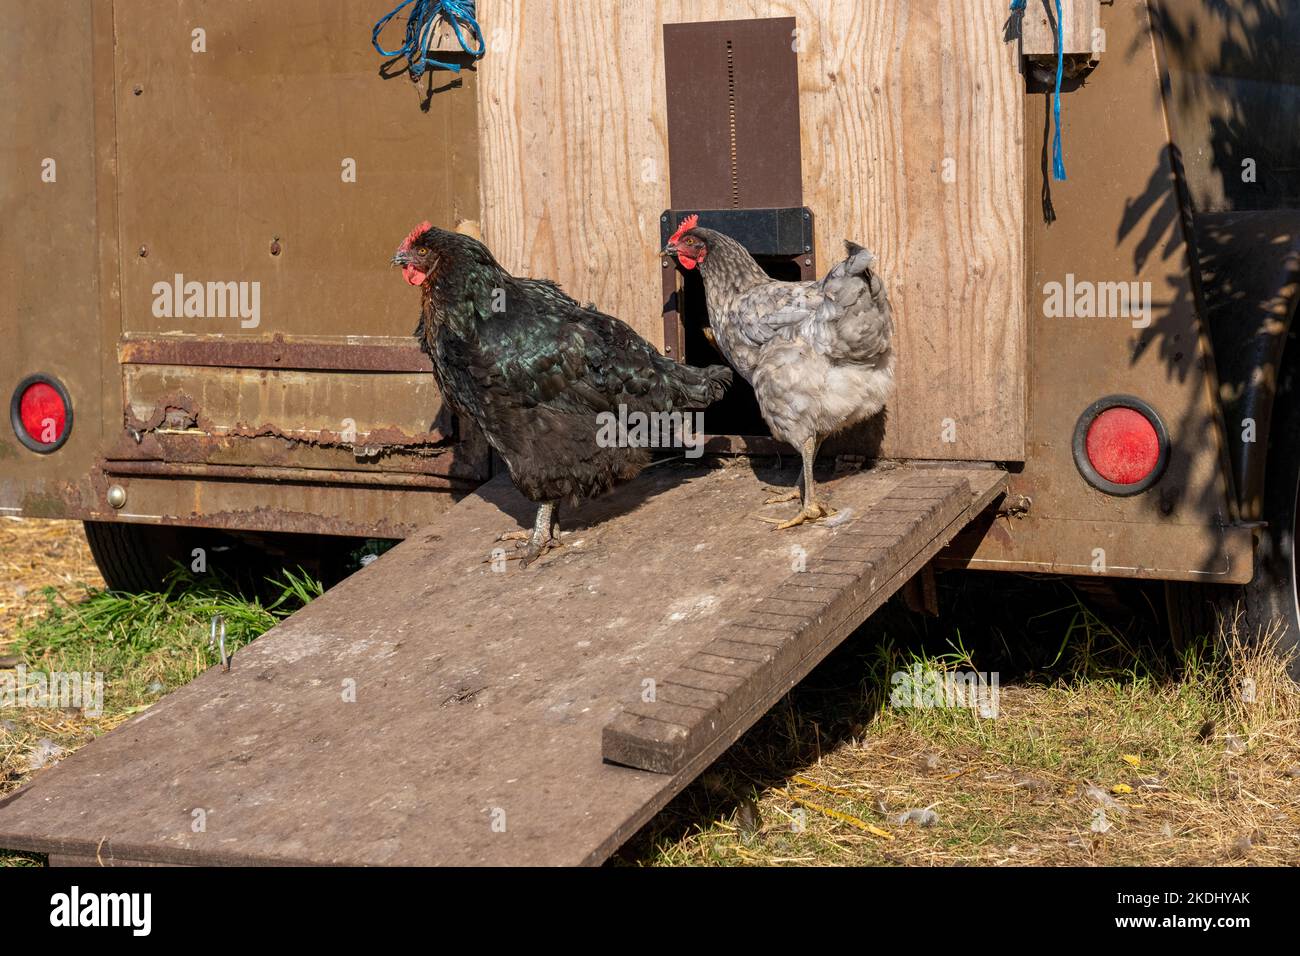 Chimacum, Washington, États-Unis. Australorpe noire et poules en bleu véritable sur une rampe menant à une coop de poulet mobile Banque D'Images